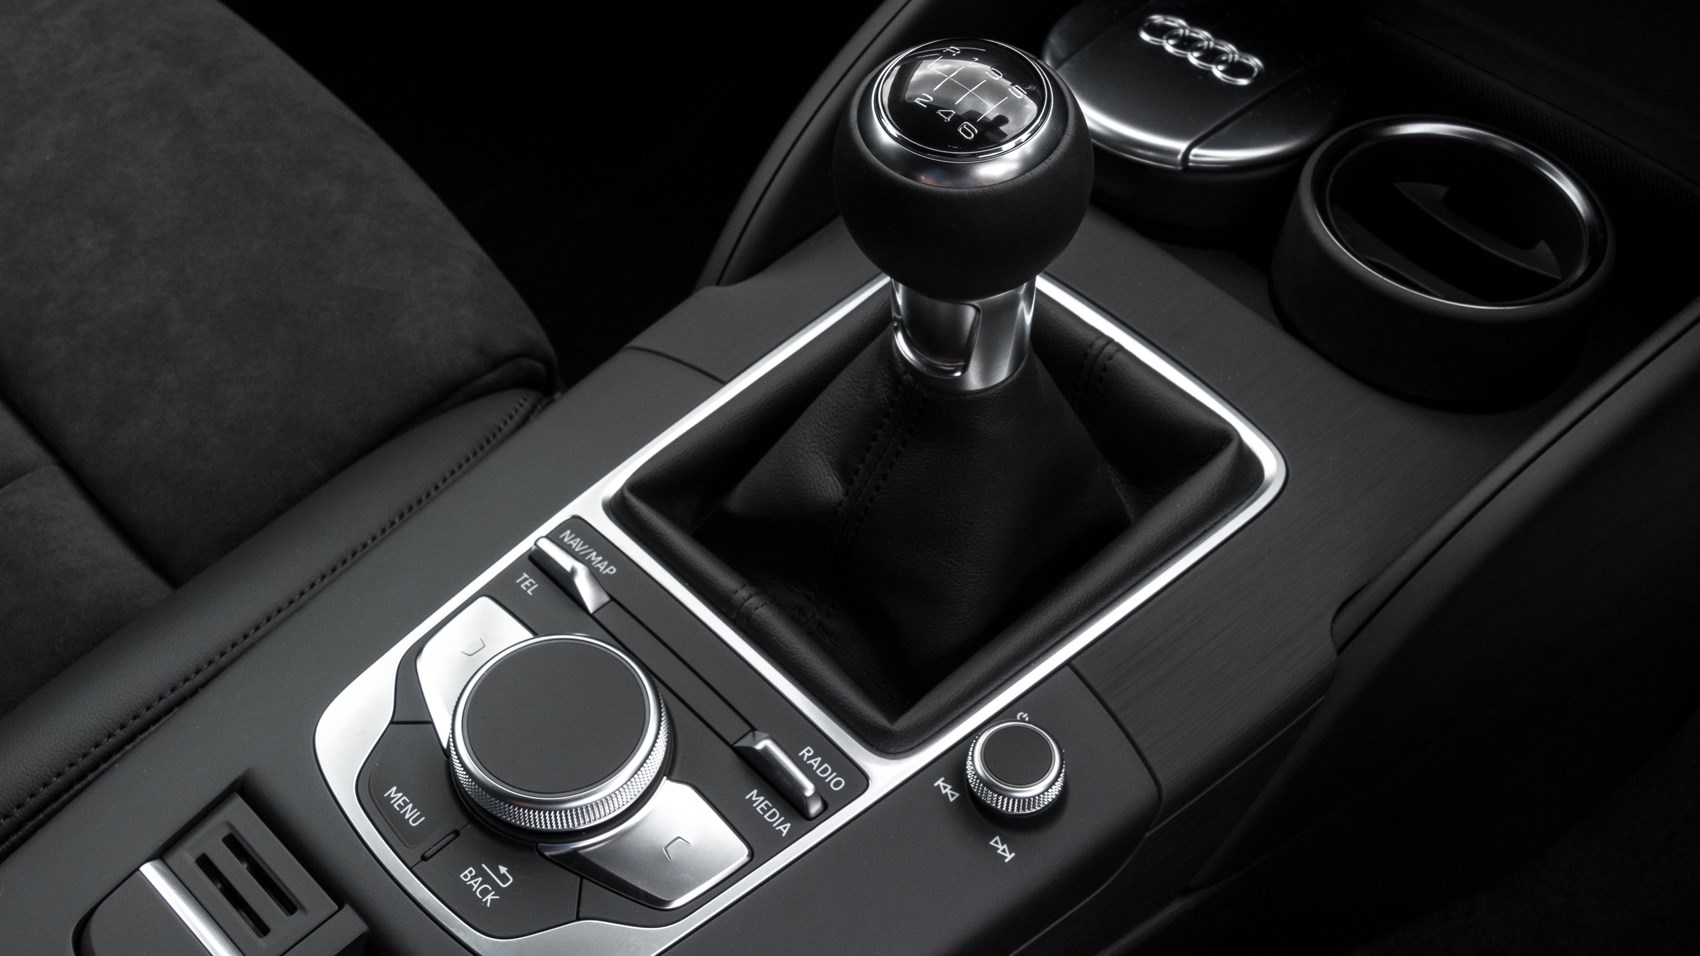 Audi A3 Sportback 1.4 TFSI review